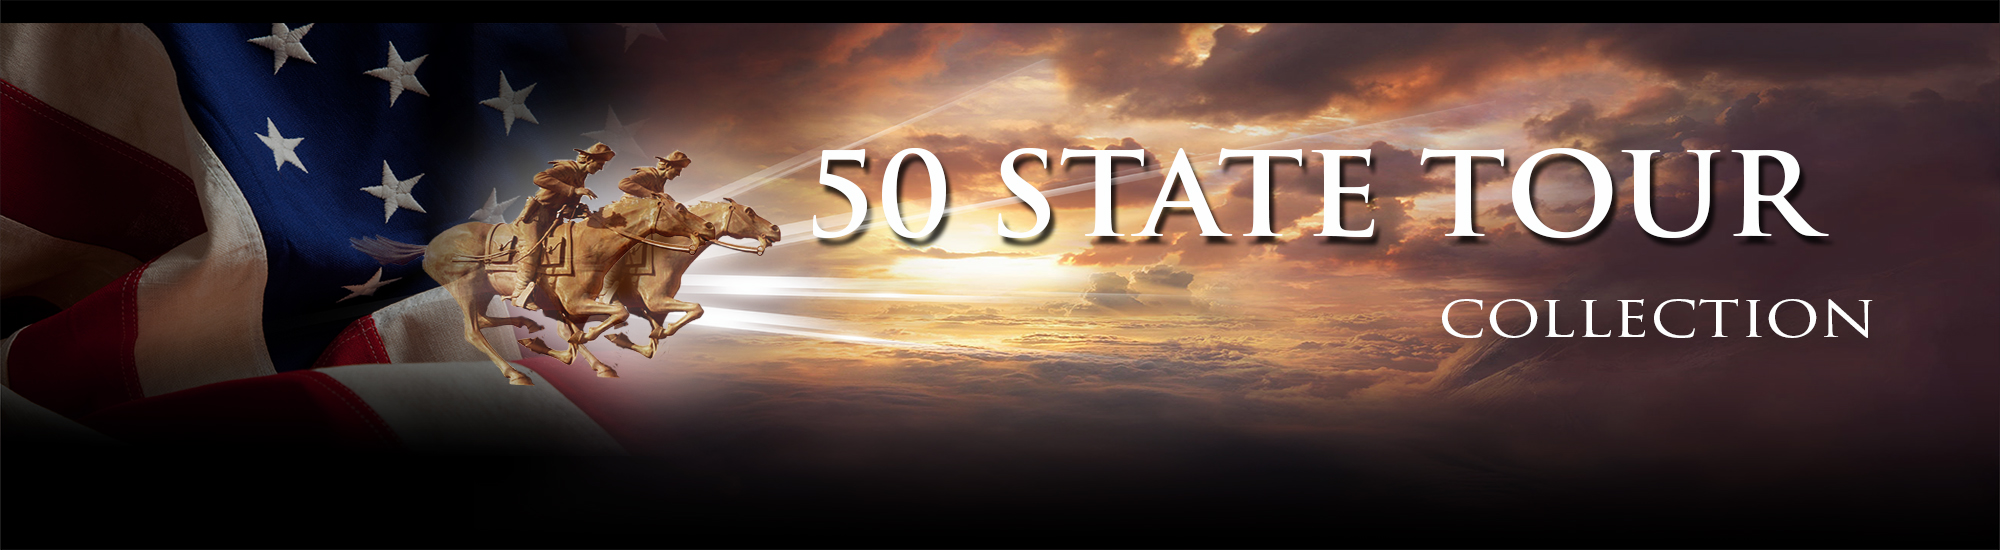 50 state tour